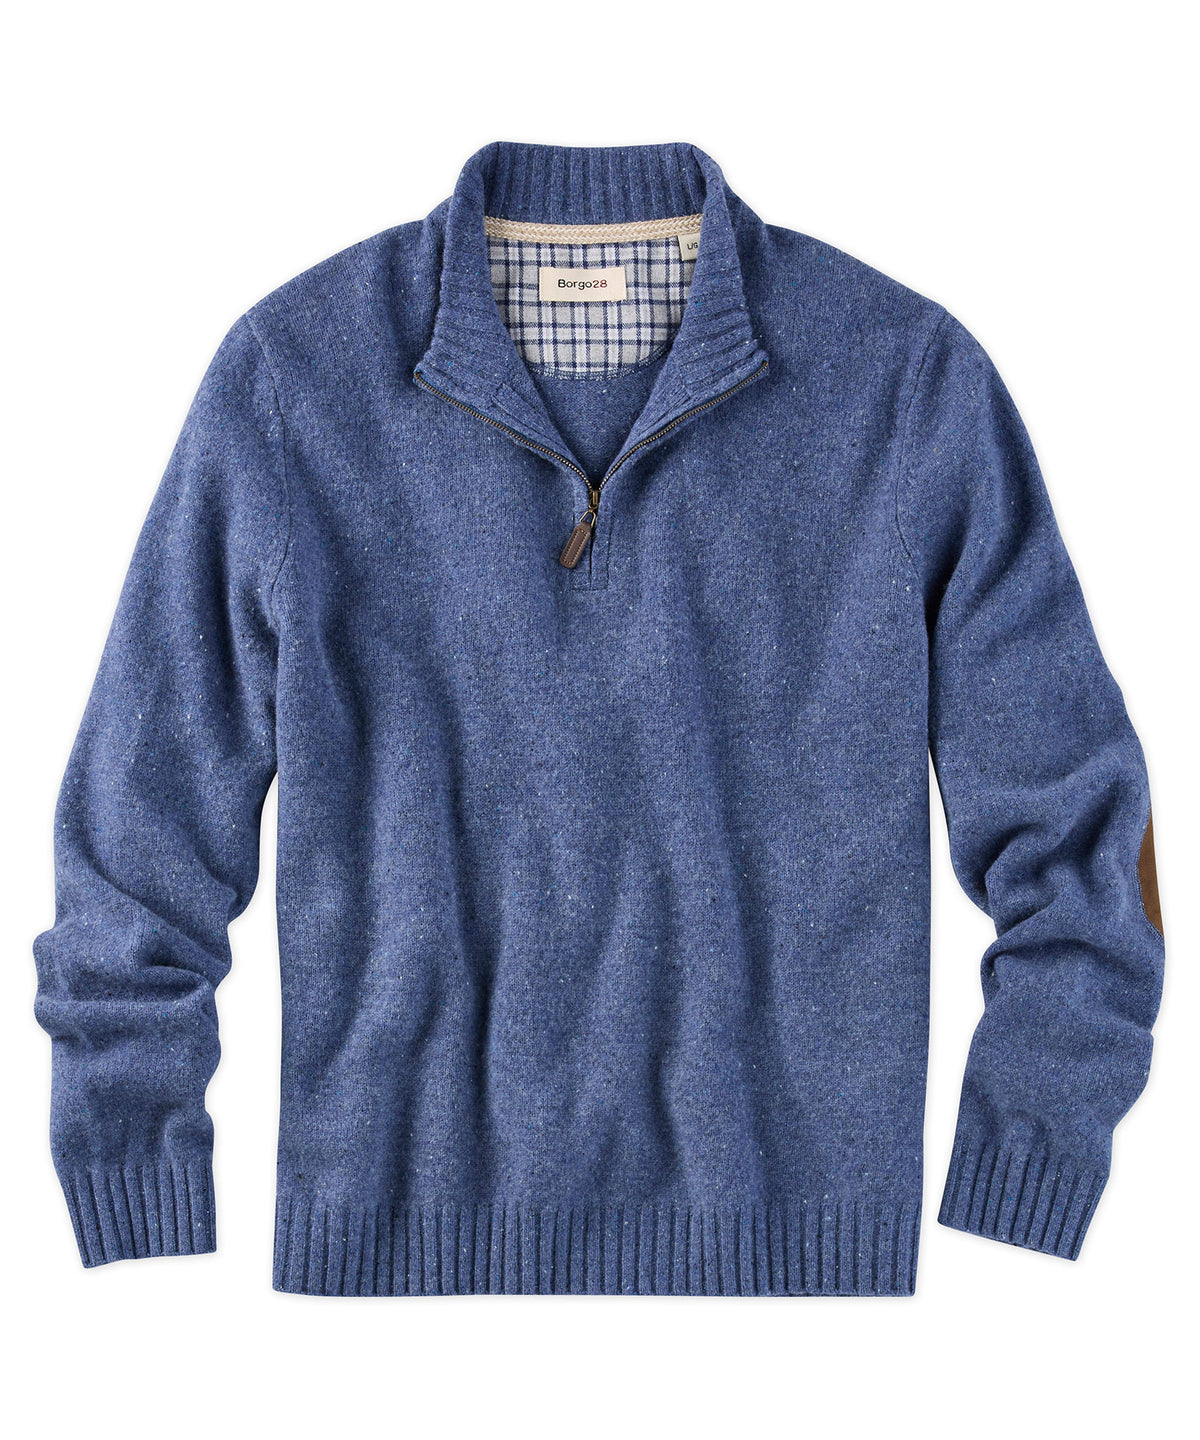 100% Merino Wool Quarter-Zip Sweater